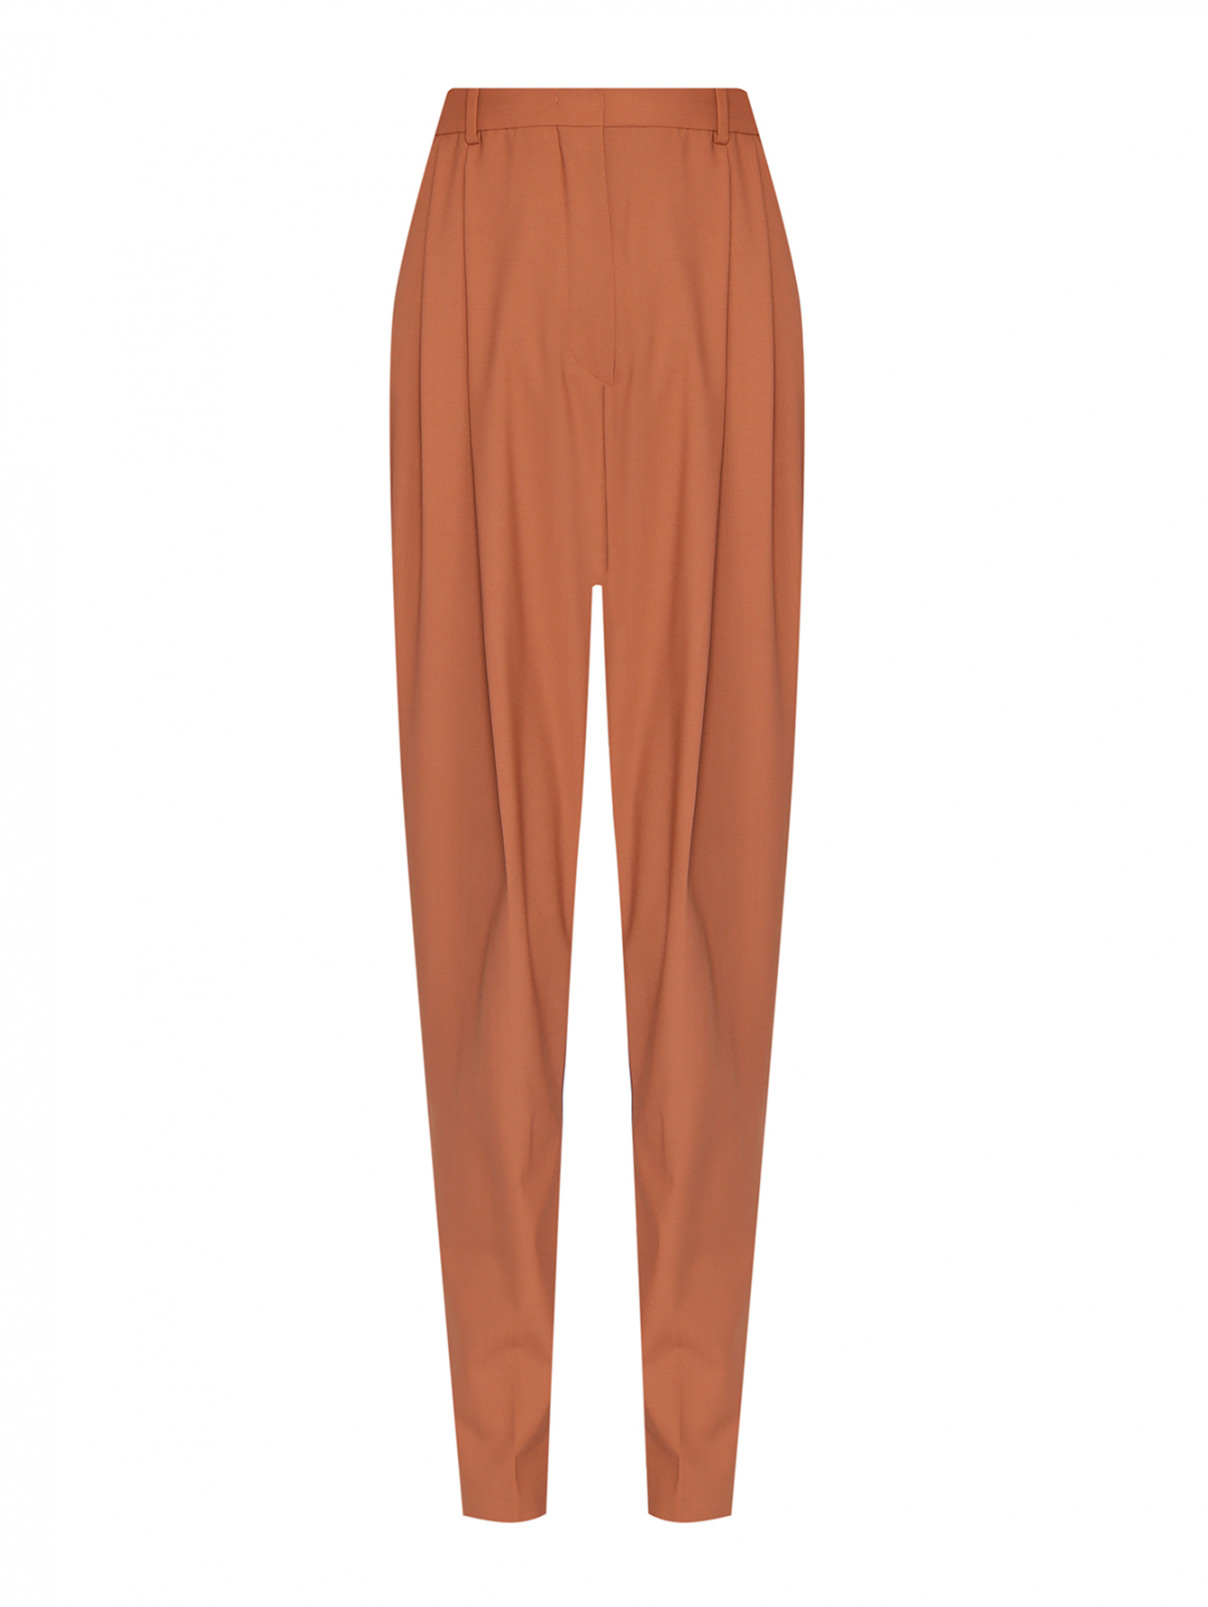 Однотонные брюки из шерсти Sportmax  –  Общий вид  – Цвет:  Оранжевый